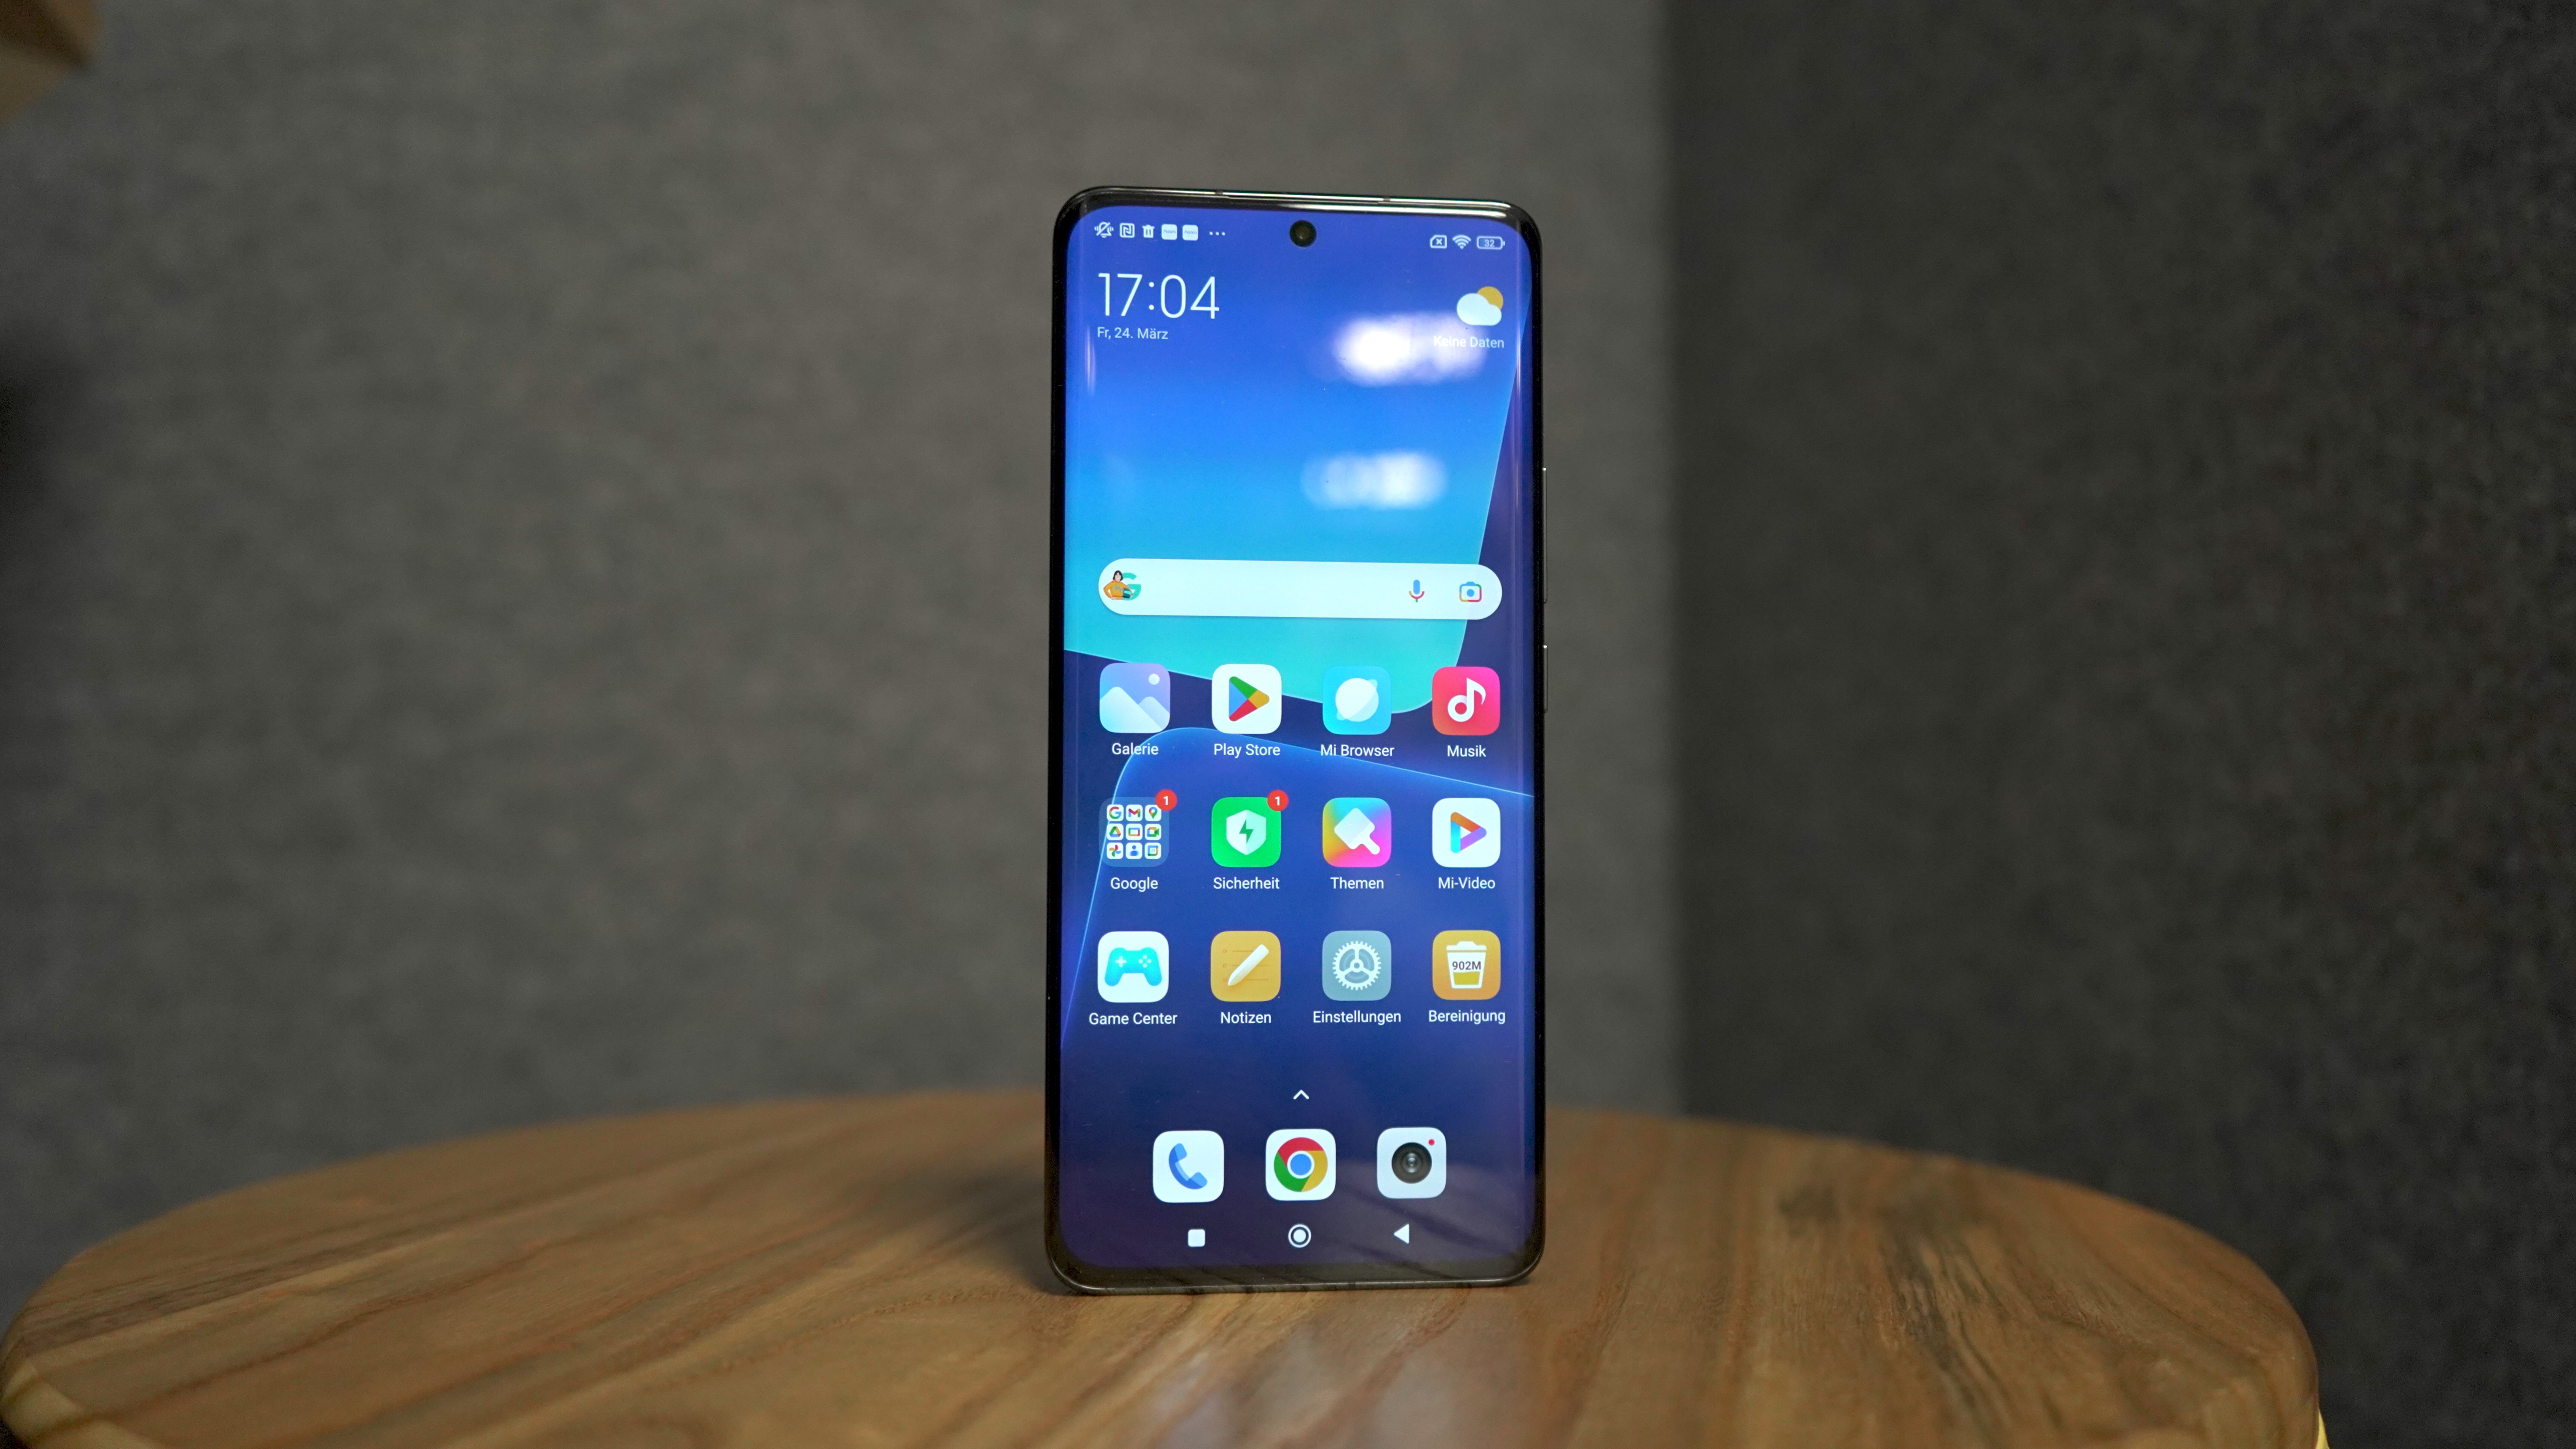 Xiaomi 13 (Pro) vorgestellt: Technische Daten, Preis und Release - connect